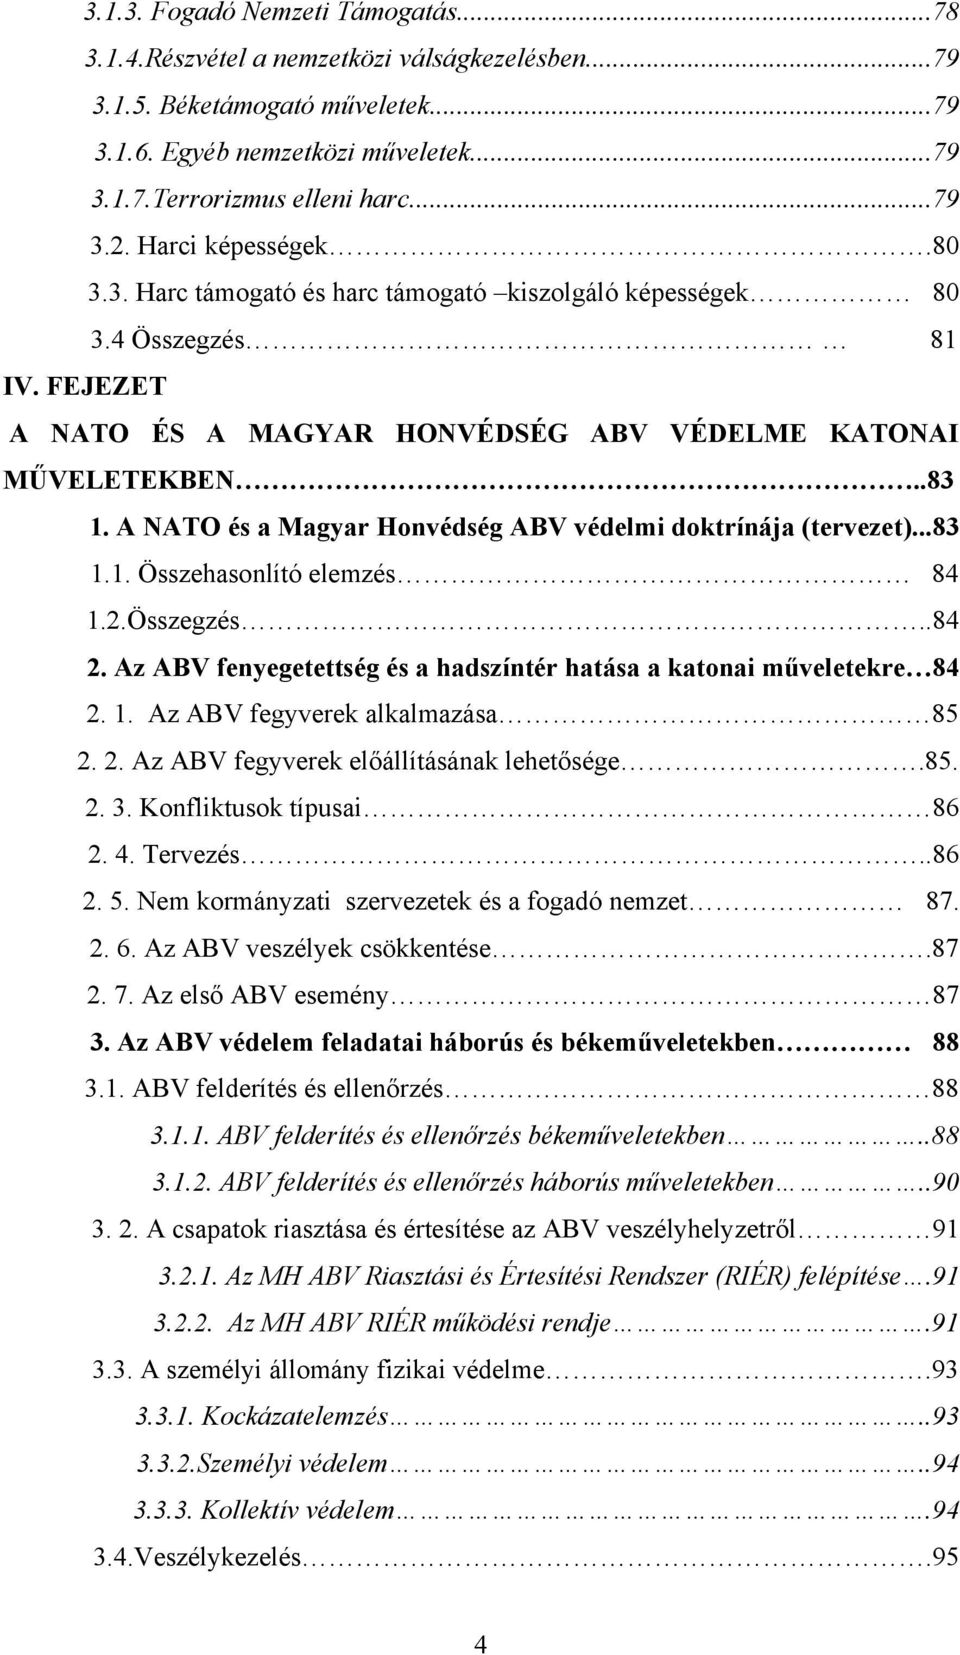 A NATO és a Magyar Honvédség ABV védelmi doktrínája (tervezet)...83 1.1. Összehasonlító elemzés 84 1.2.Összegzés..84 2. Az ABV fenyegetettség és a hadszíntér hatása a katonai műveletekre 84 2. 1. Az ABV fegyverek alkalmazása 85 2.